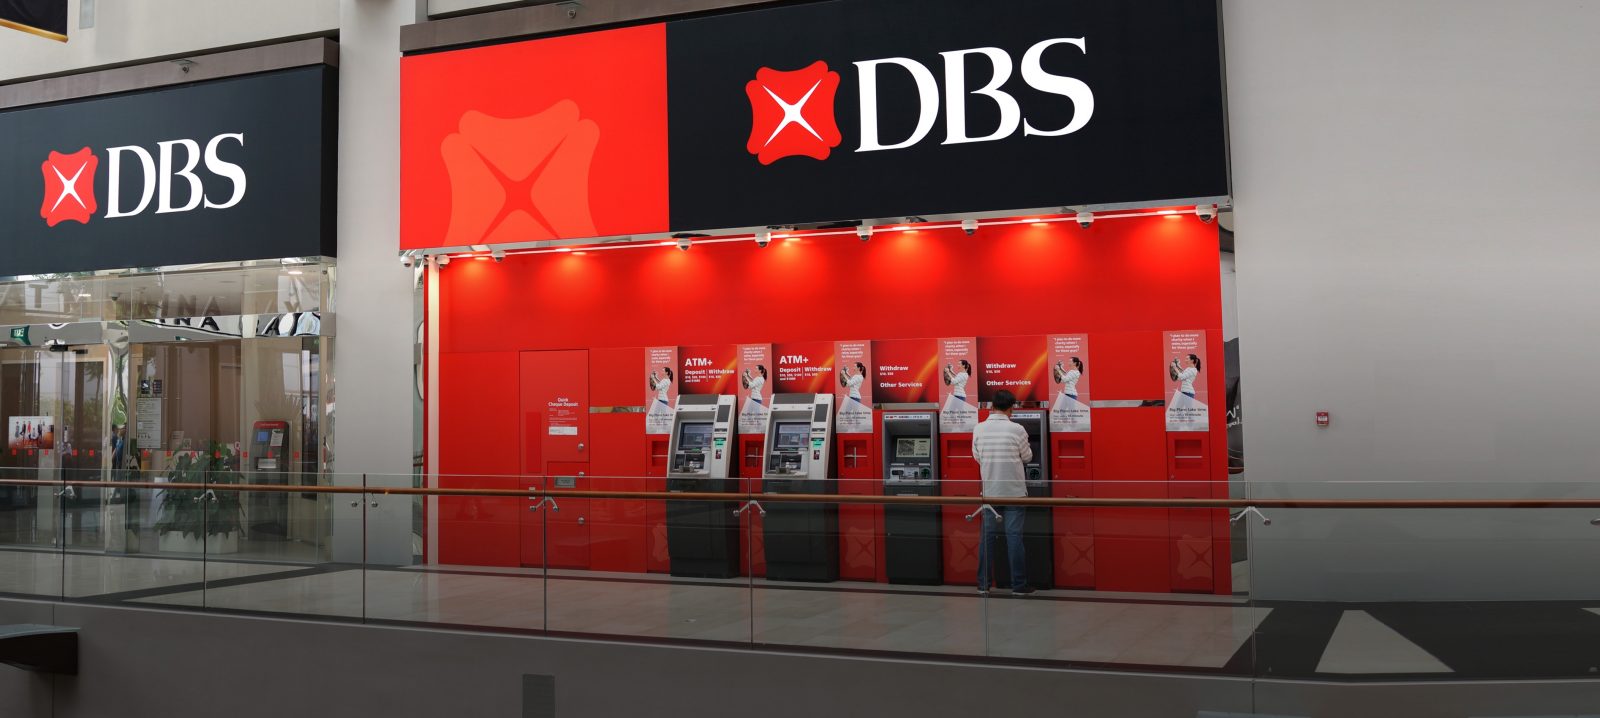 dbs bank loan